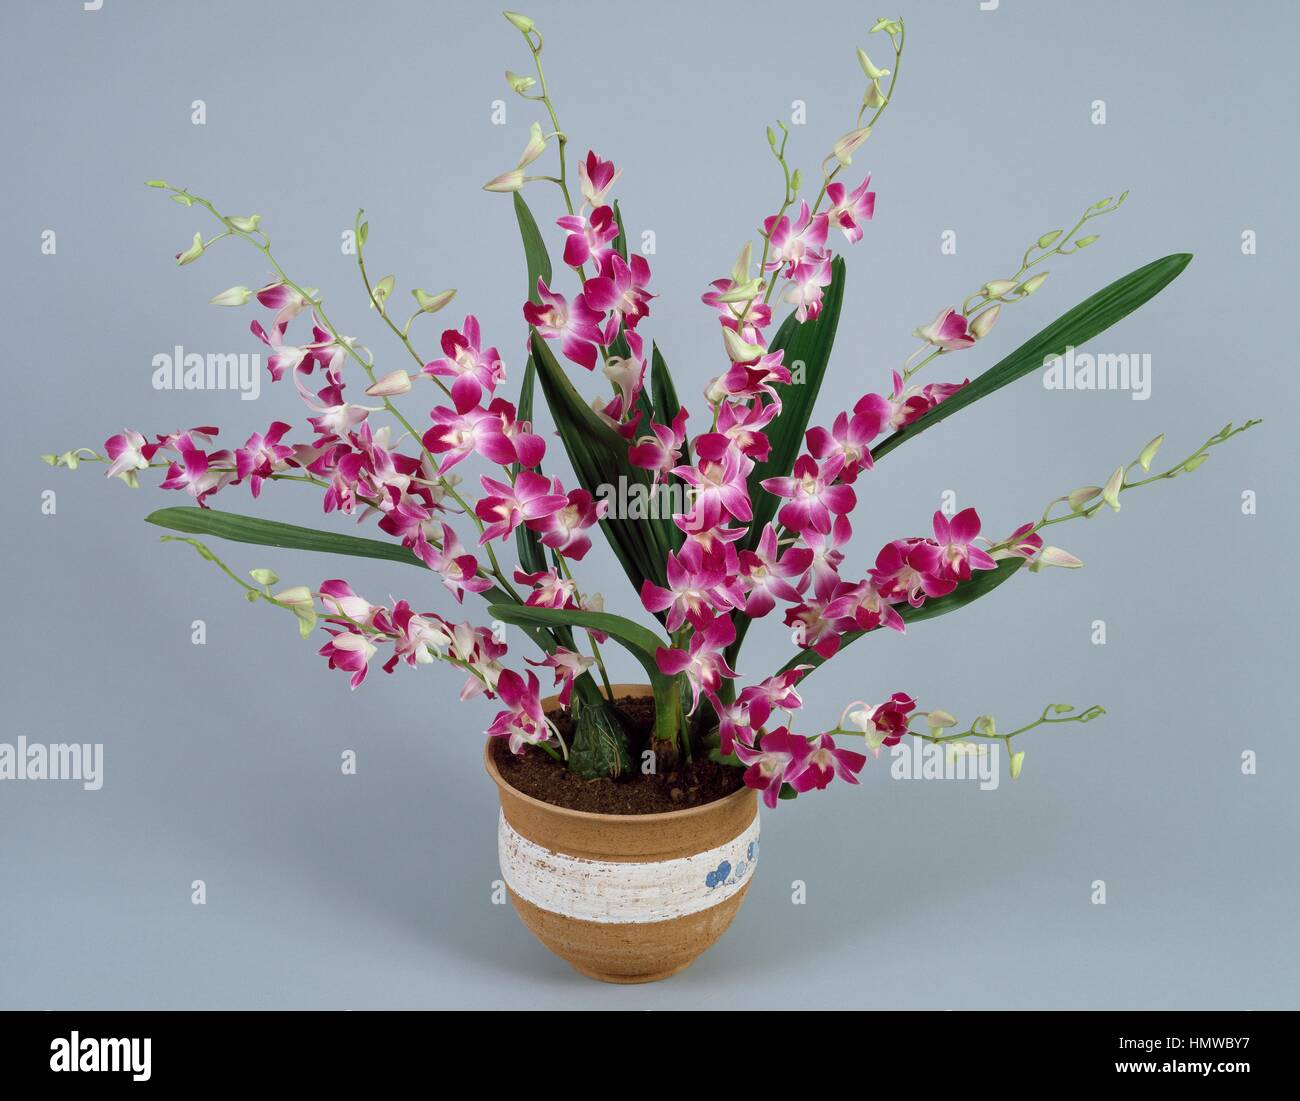 Cooktown orchid (Dendrobium phalaenopsis or Dendrobium bigibbum), Orchidaceae. Stock Photo